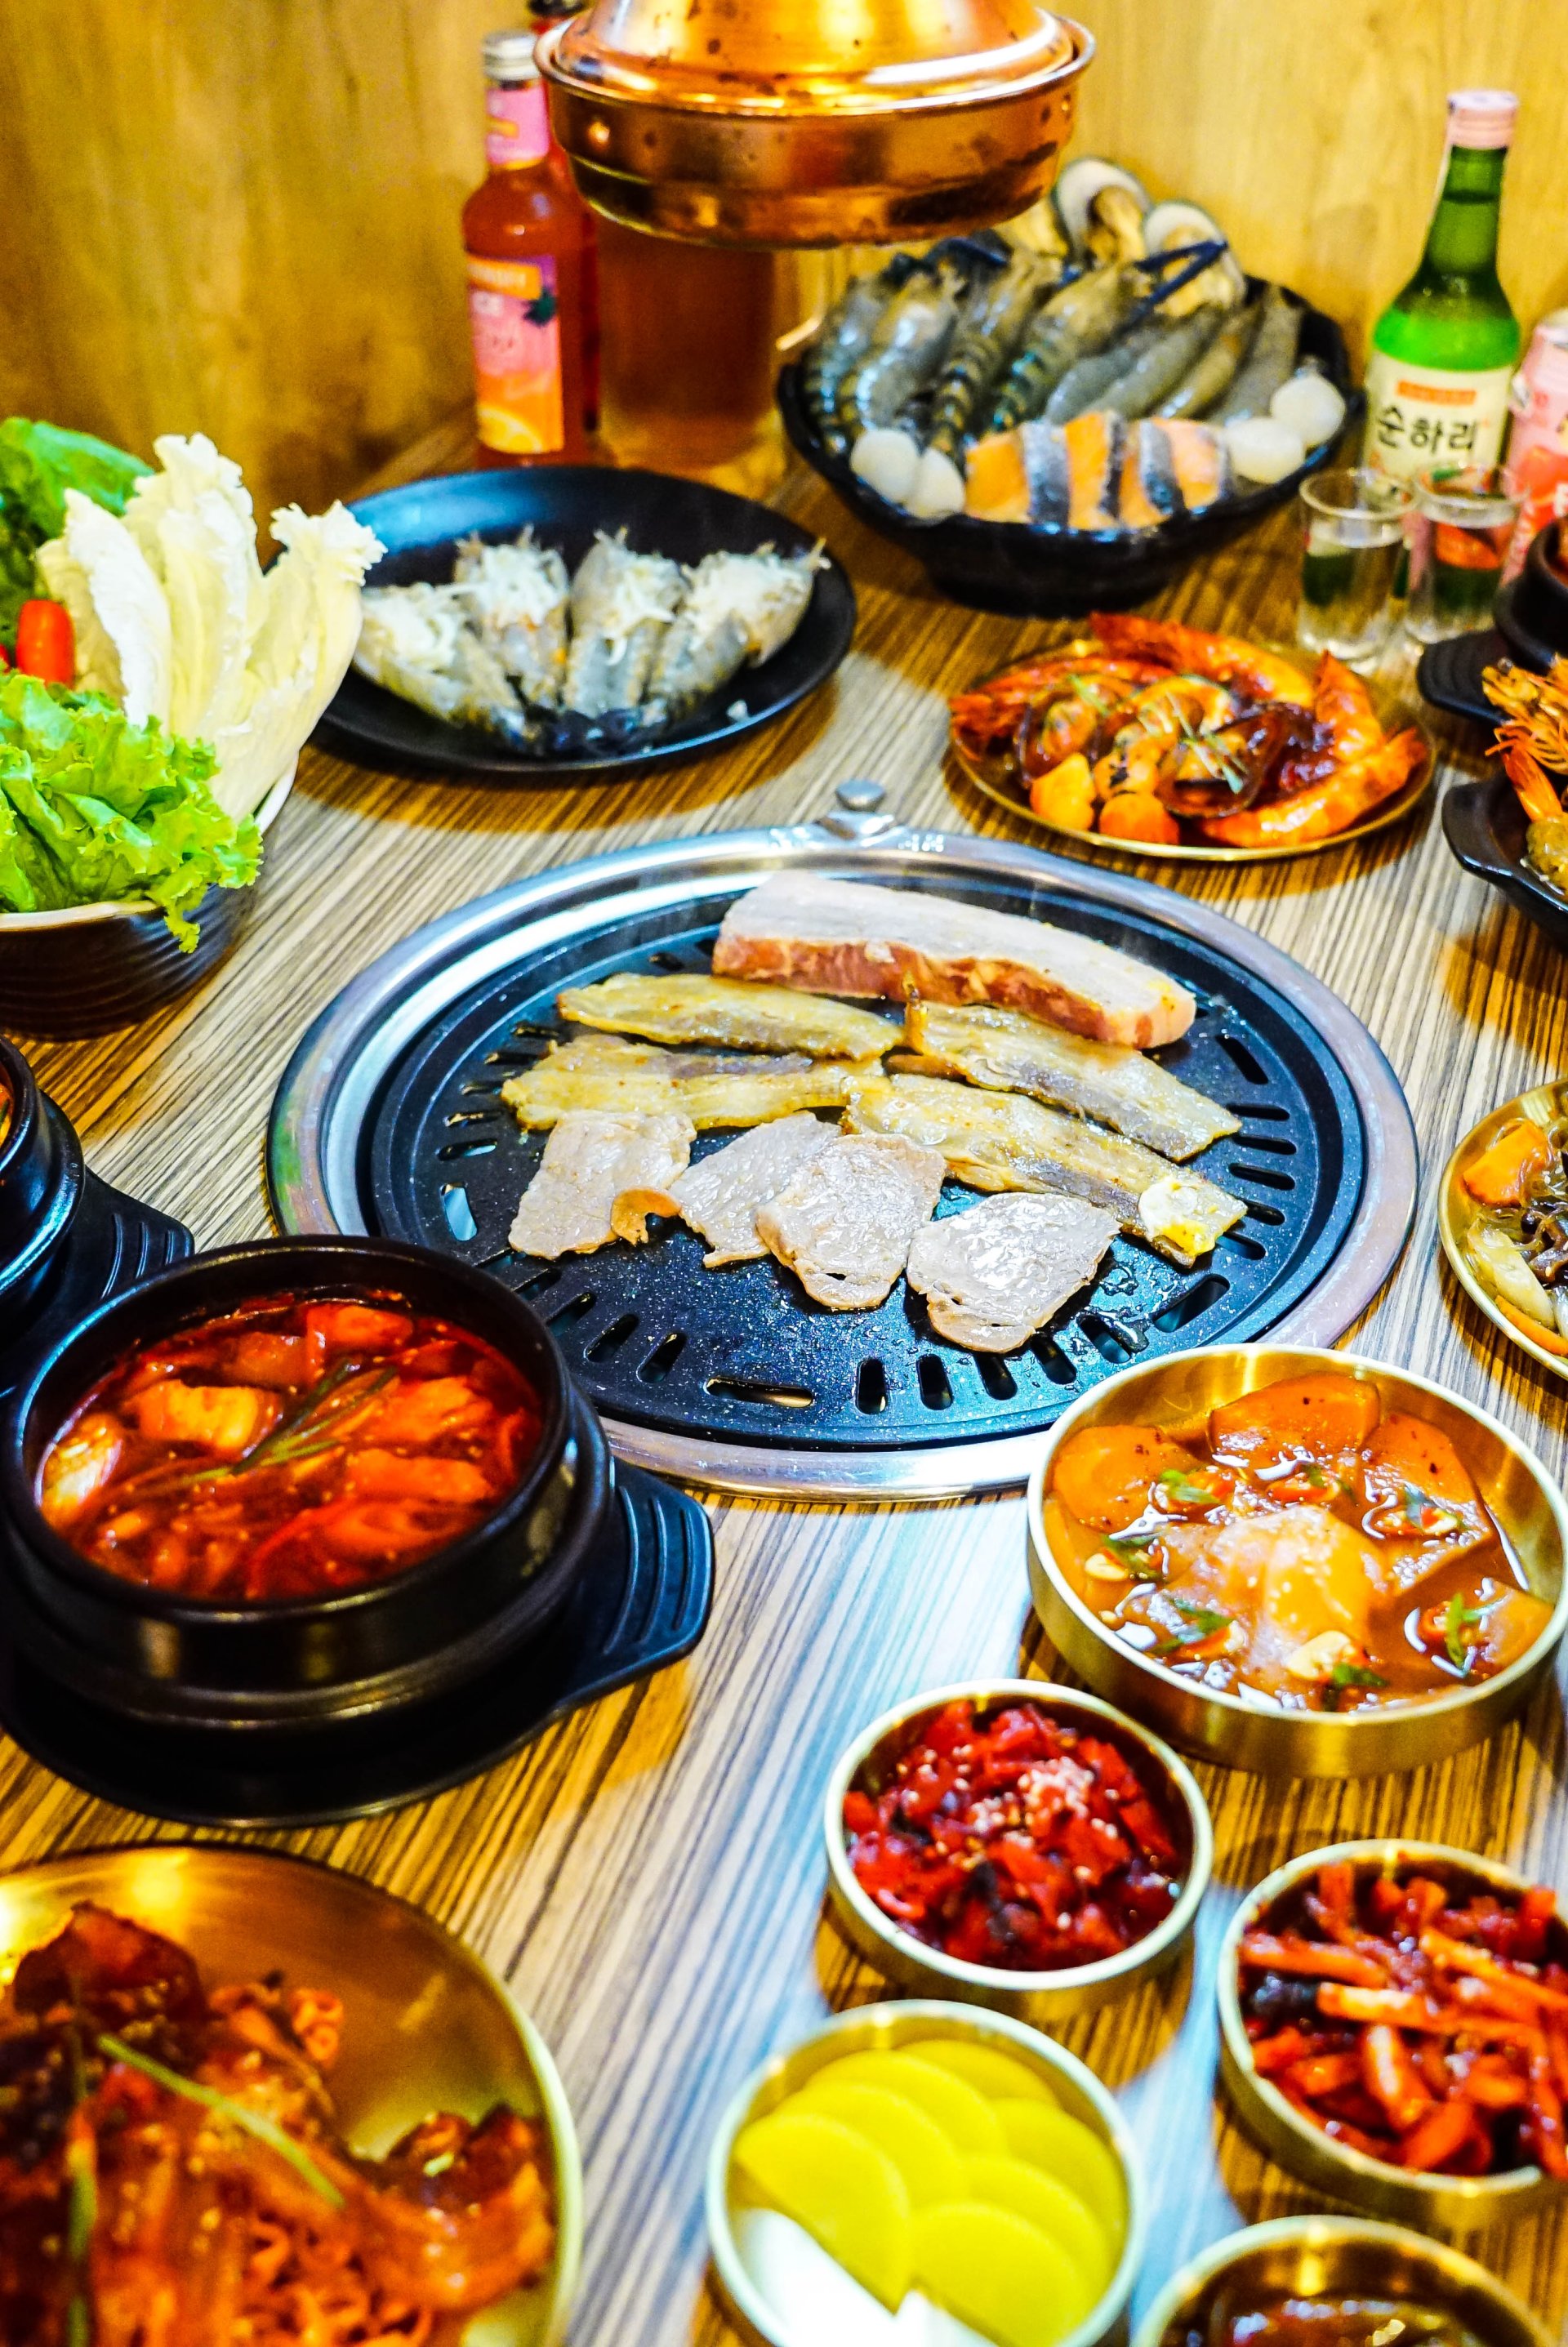 ร้านฮาวอน บาร์บีคิว (Korean BBQ) 